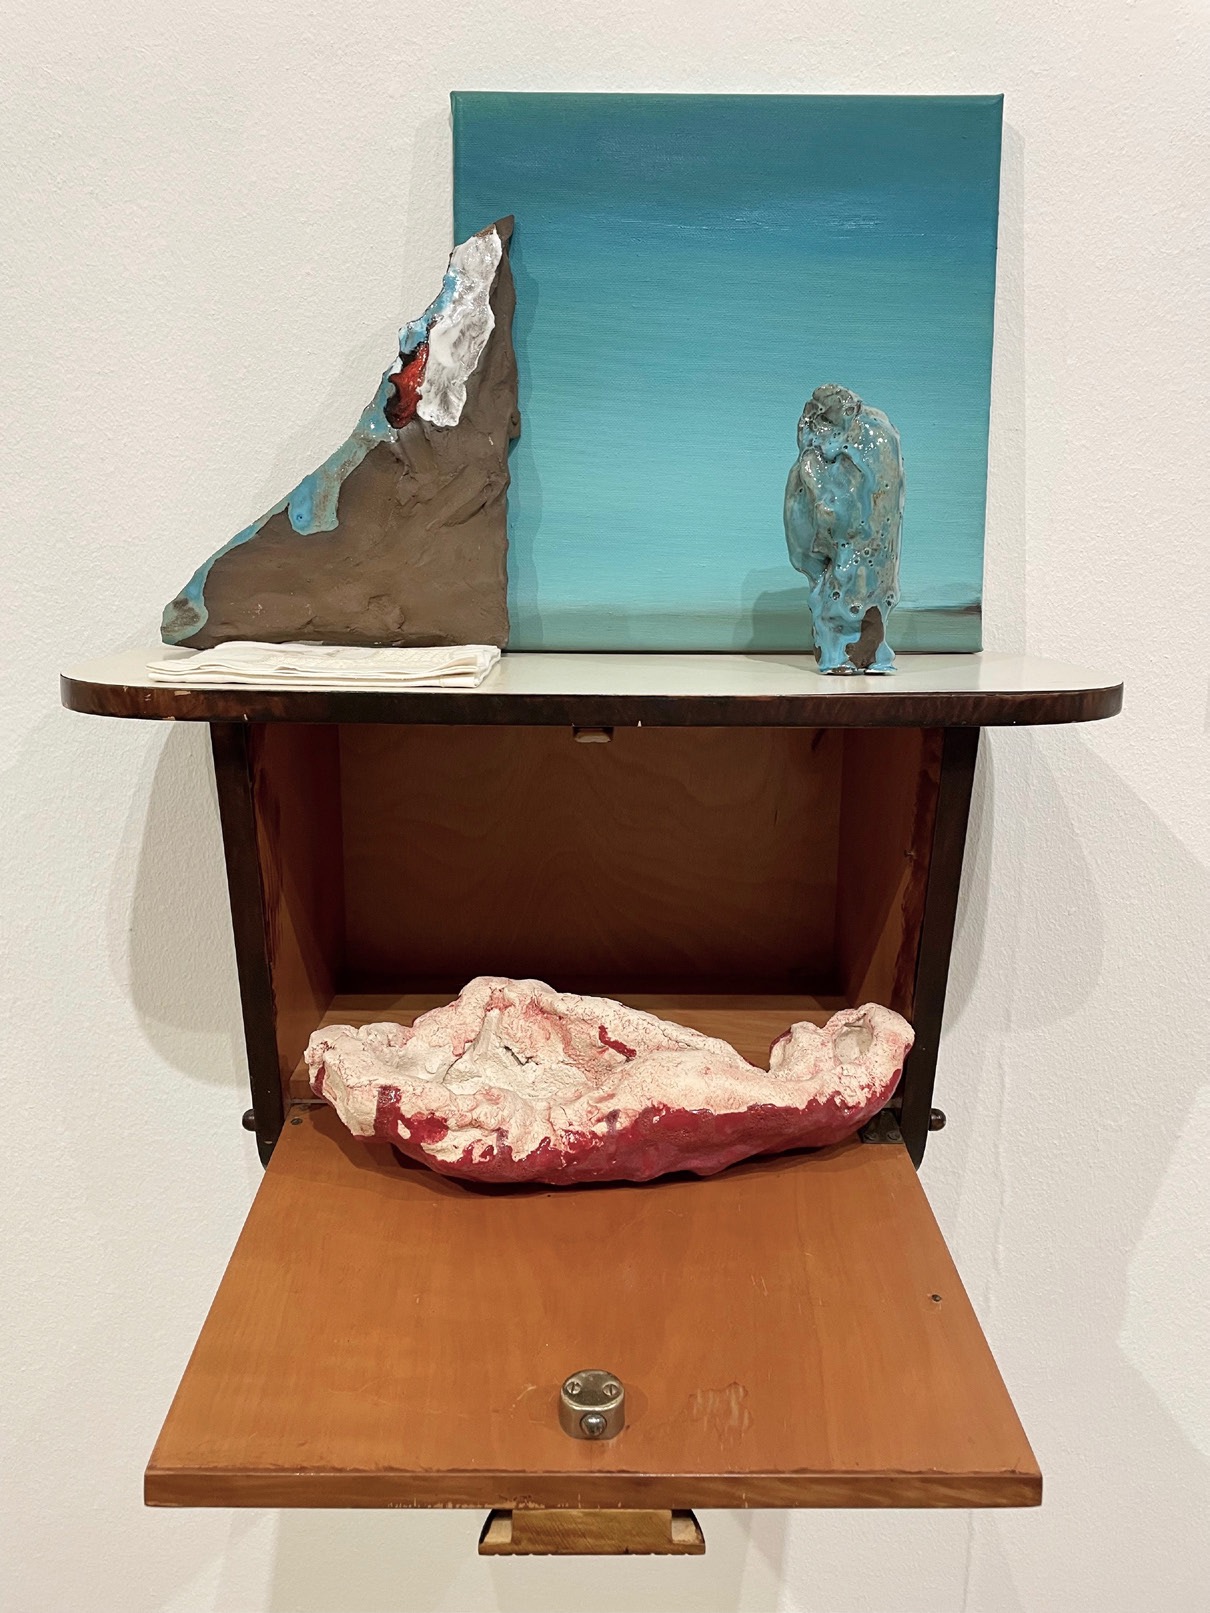 Susanne S. D. Themlitz, Lá, 2022. Ceramic with glaze, oil on canvas, linen napkin with lace, wooden cabinet. 60 x 50 x 38 cm. Unique
